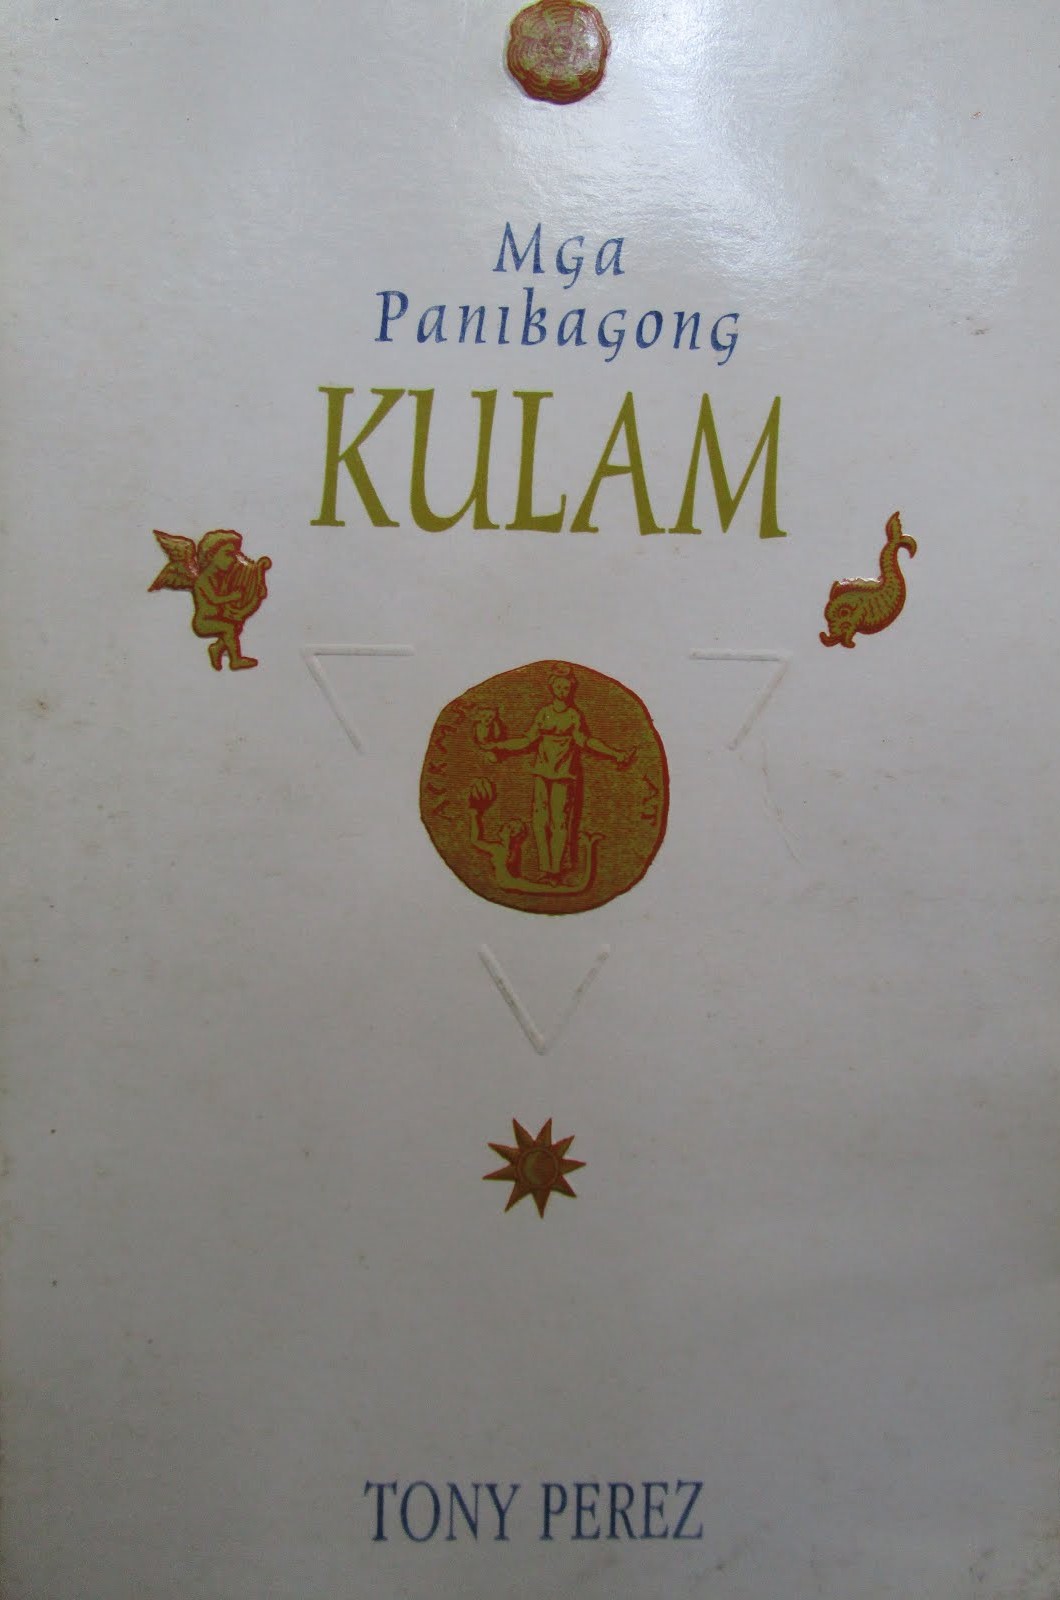 First edition of "Mga Panibagong Kulam"